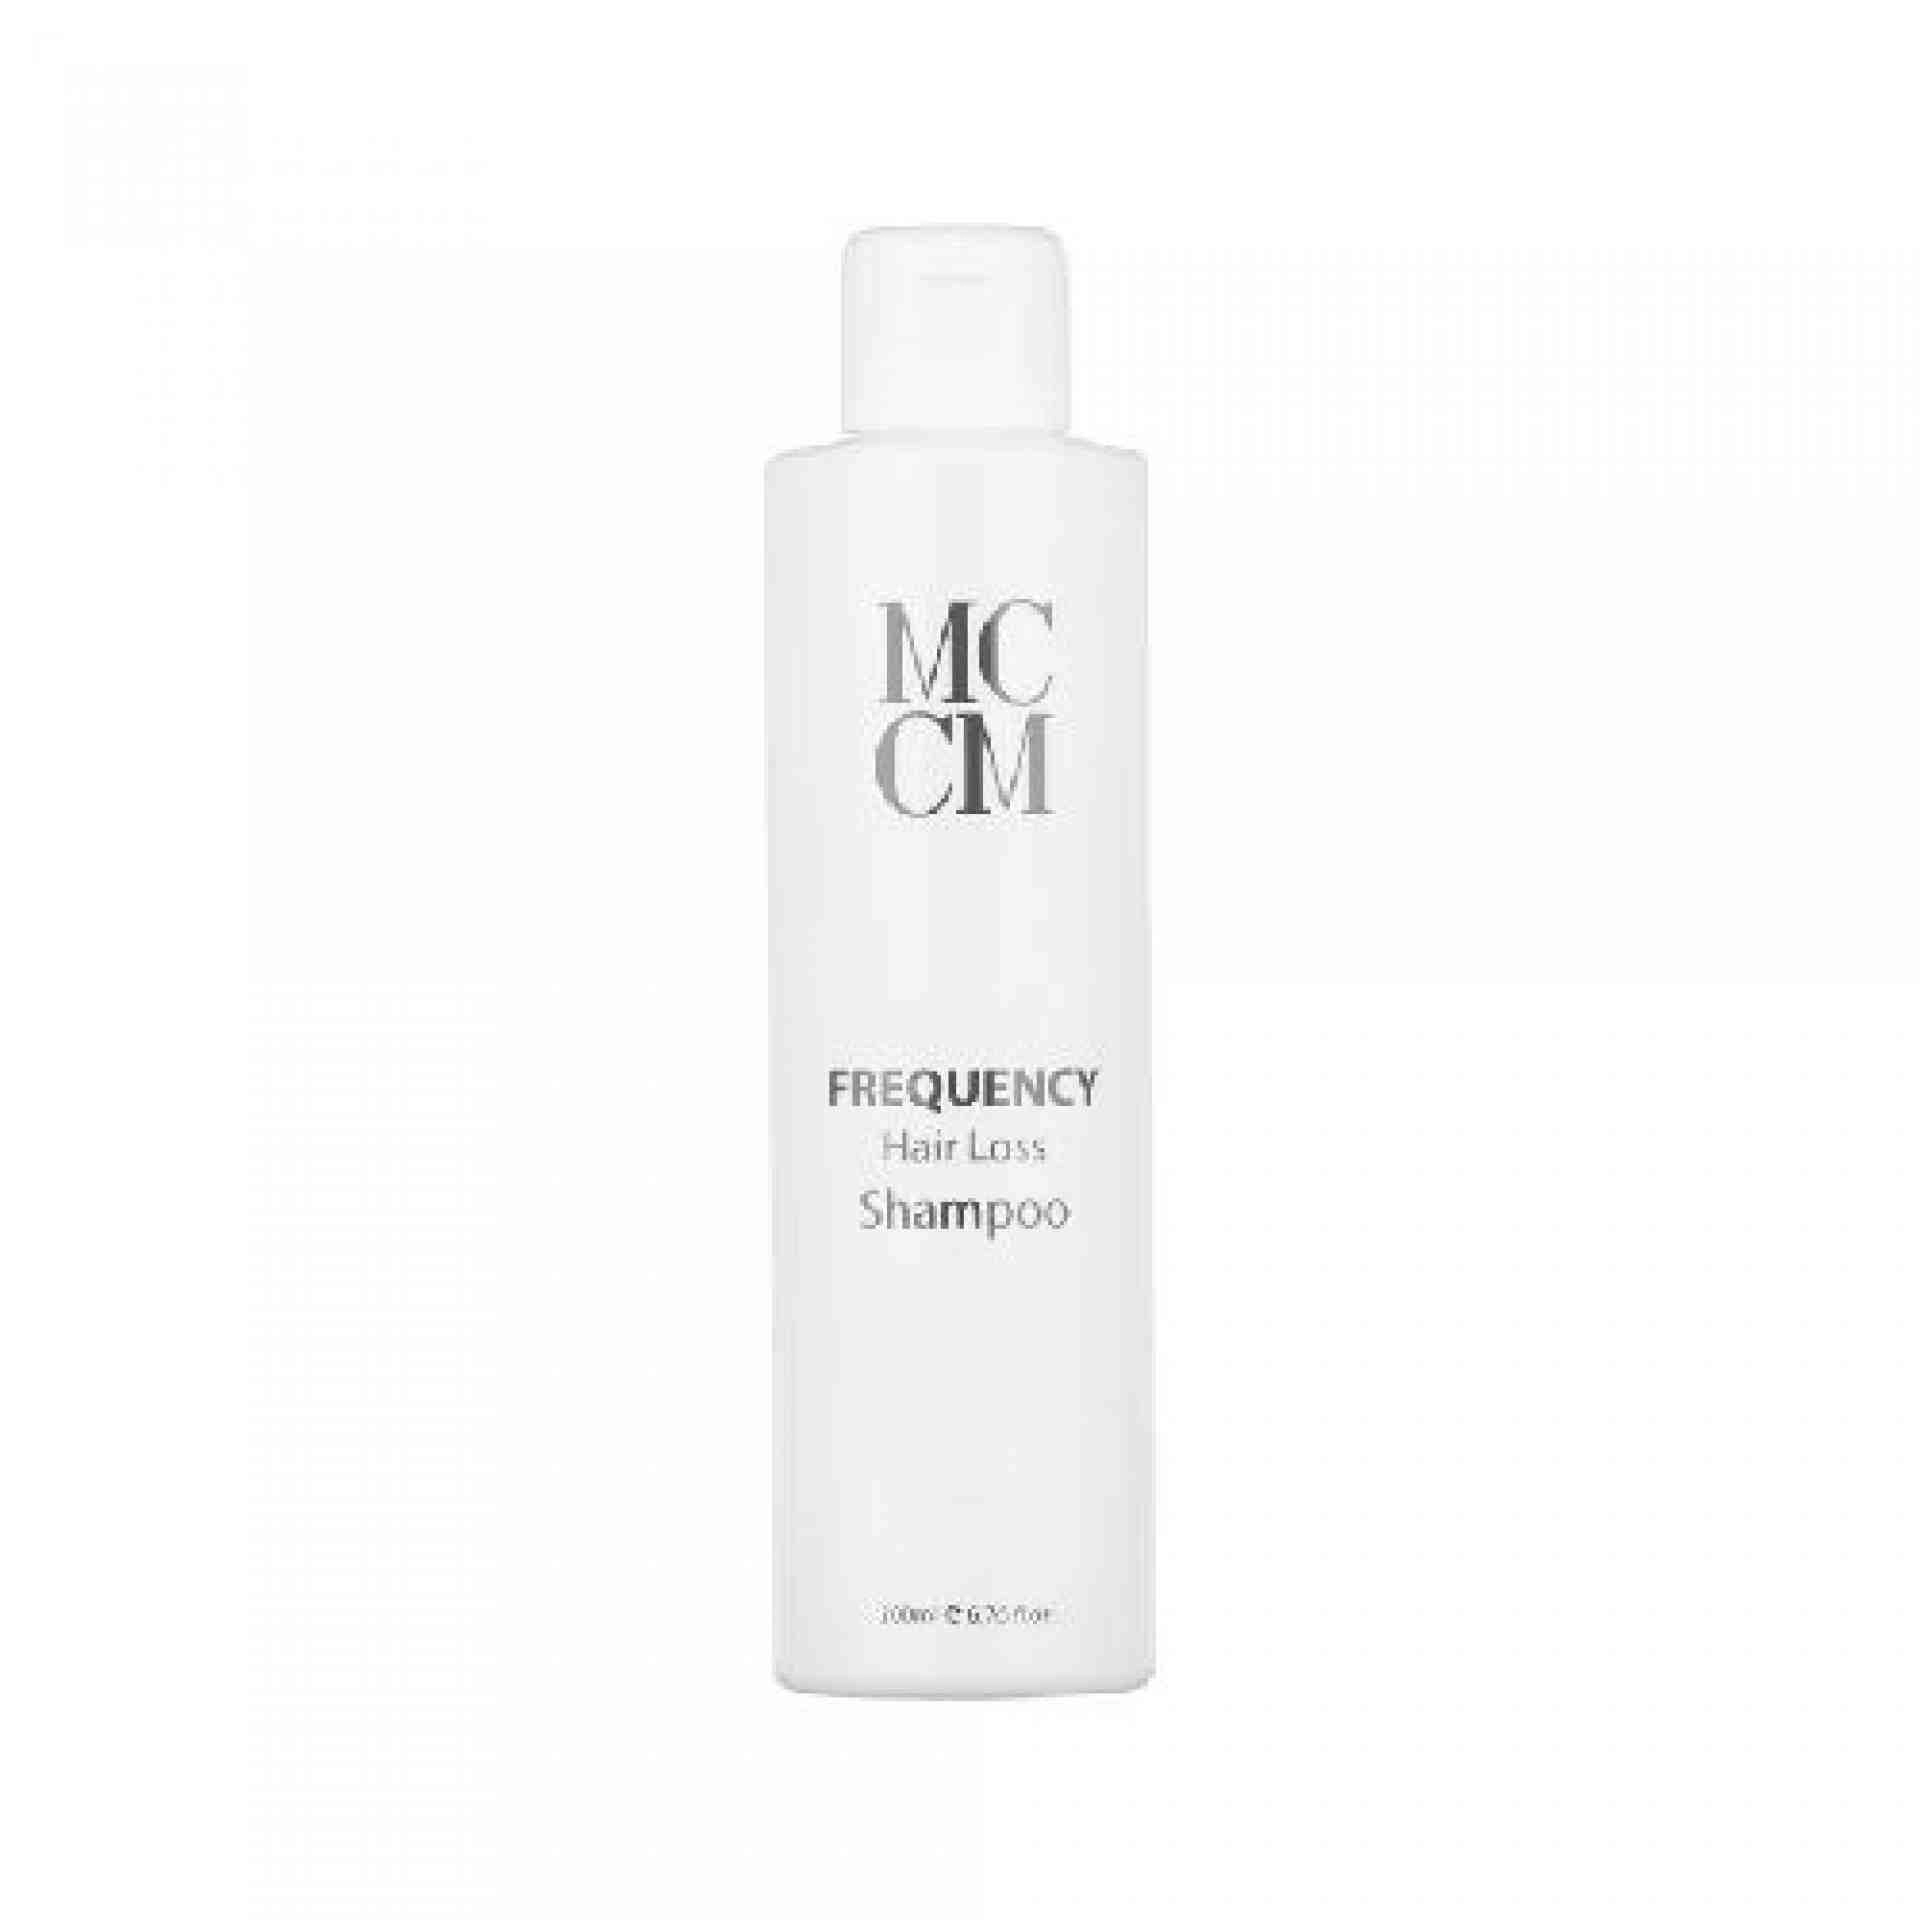 Frequency Shampoo | Champú anticaída 200 ml - Línea Capilar - MCCM ®